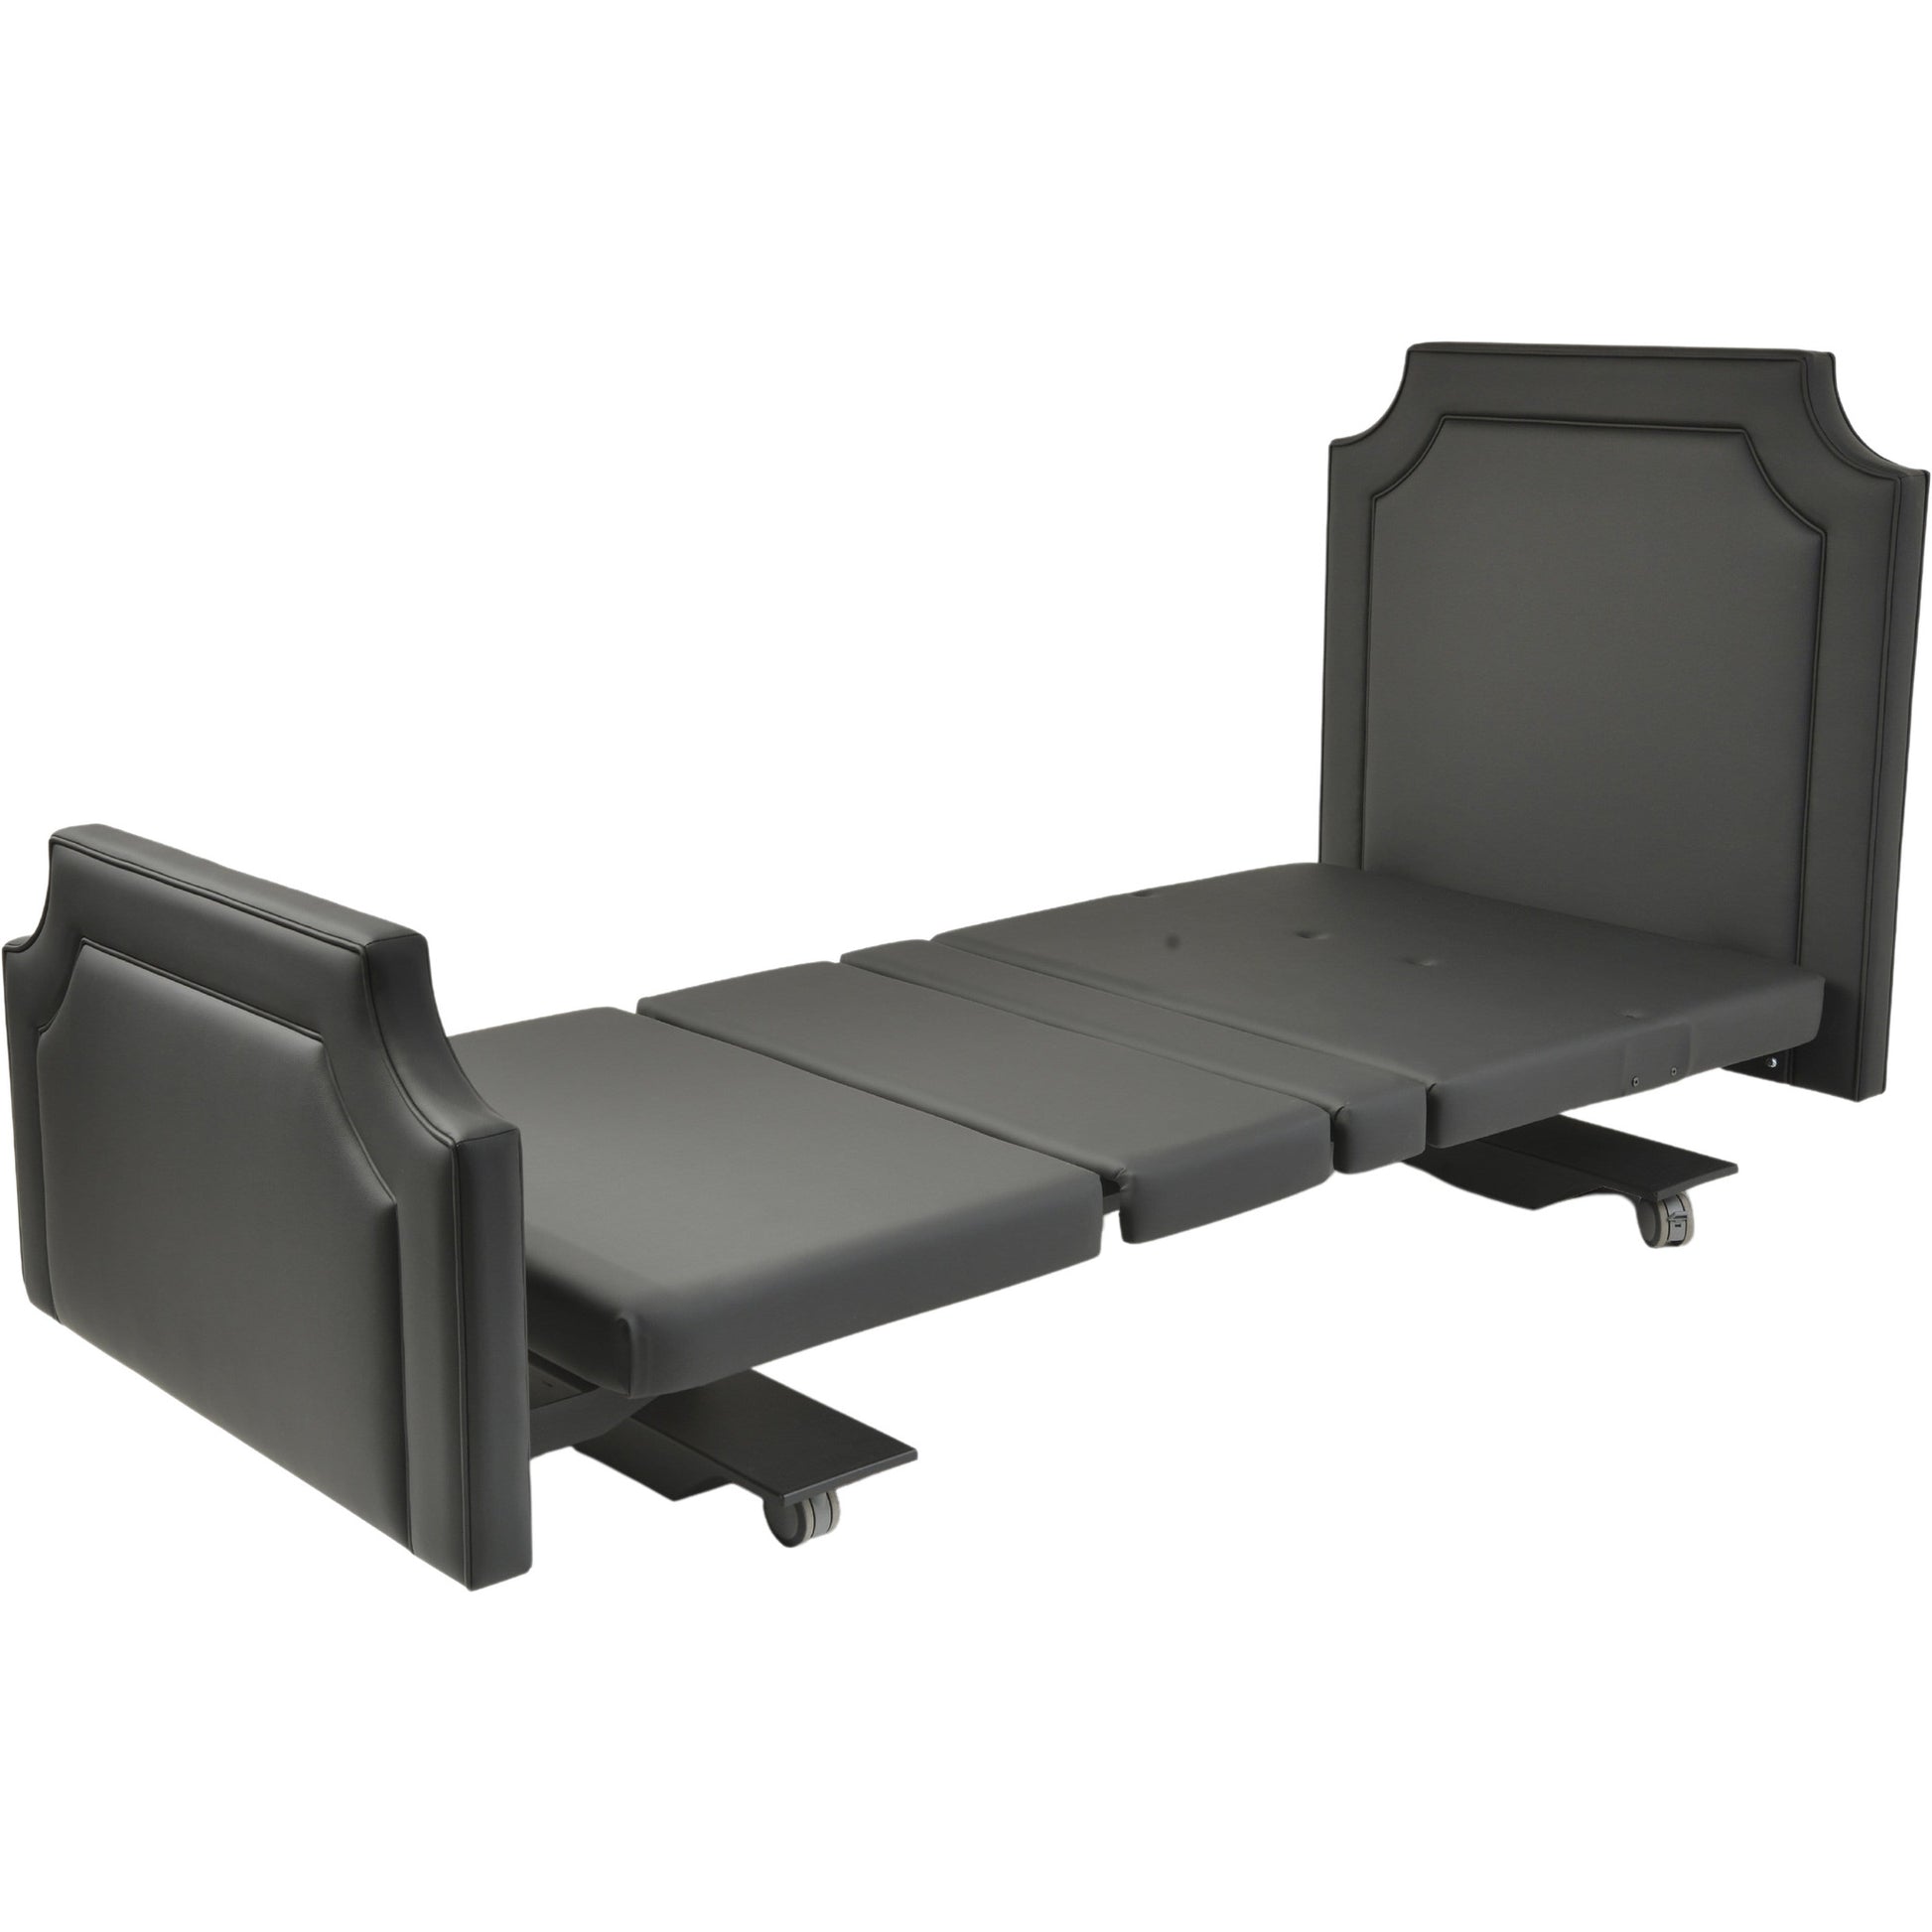 Assured Comforts Hi-Low Adjustable Beds Mobile Series Hi-Low Adjustable Beds by Assured Comfort®